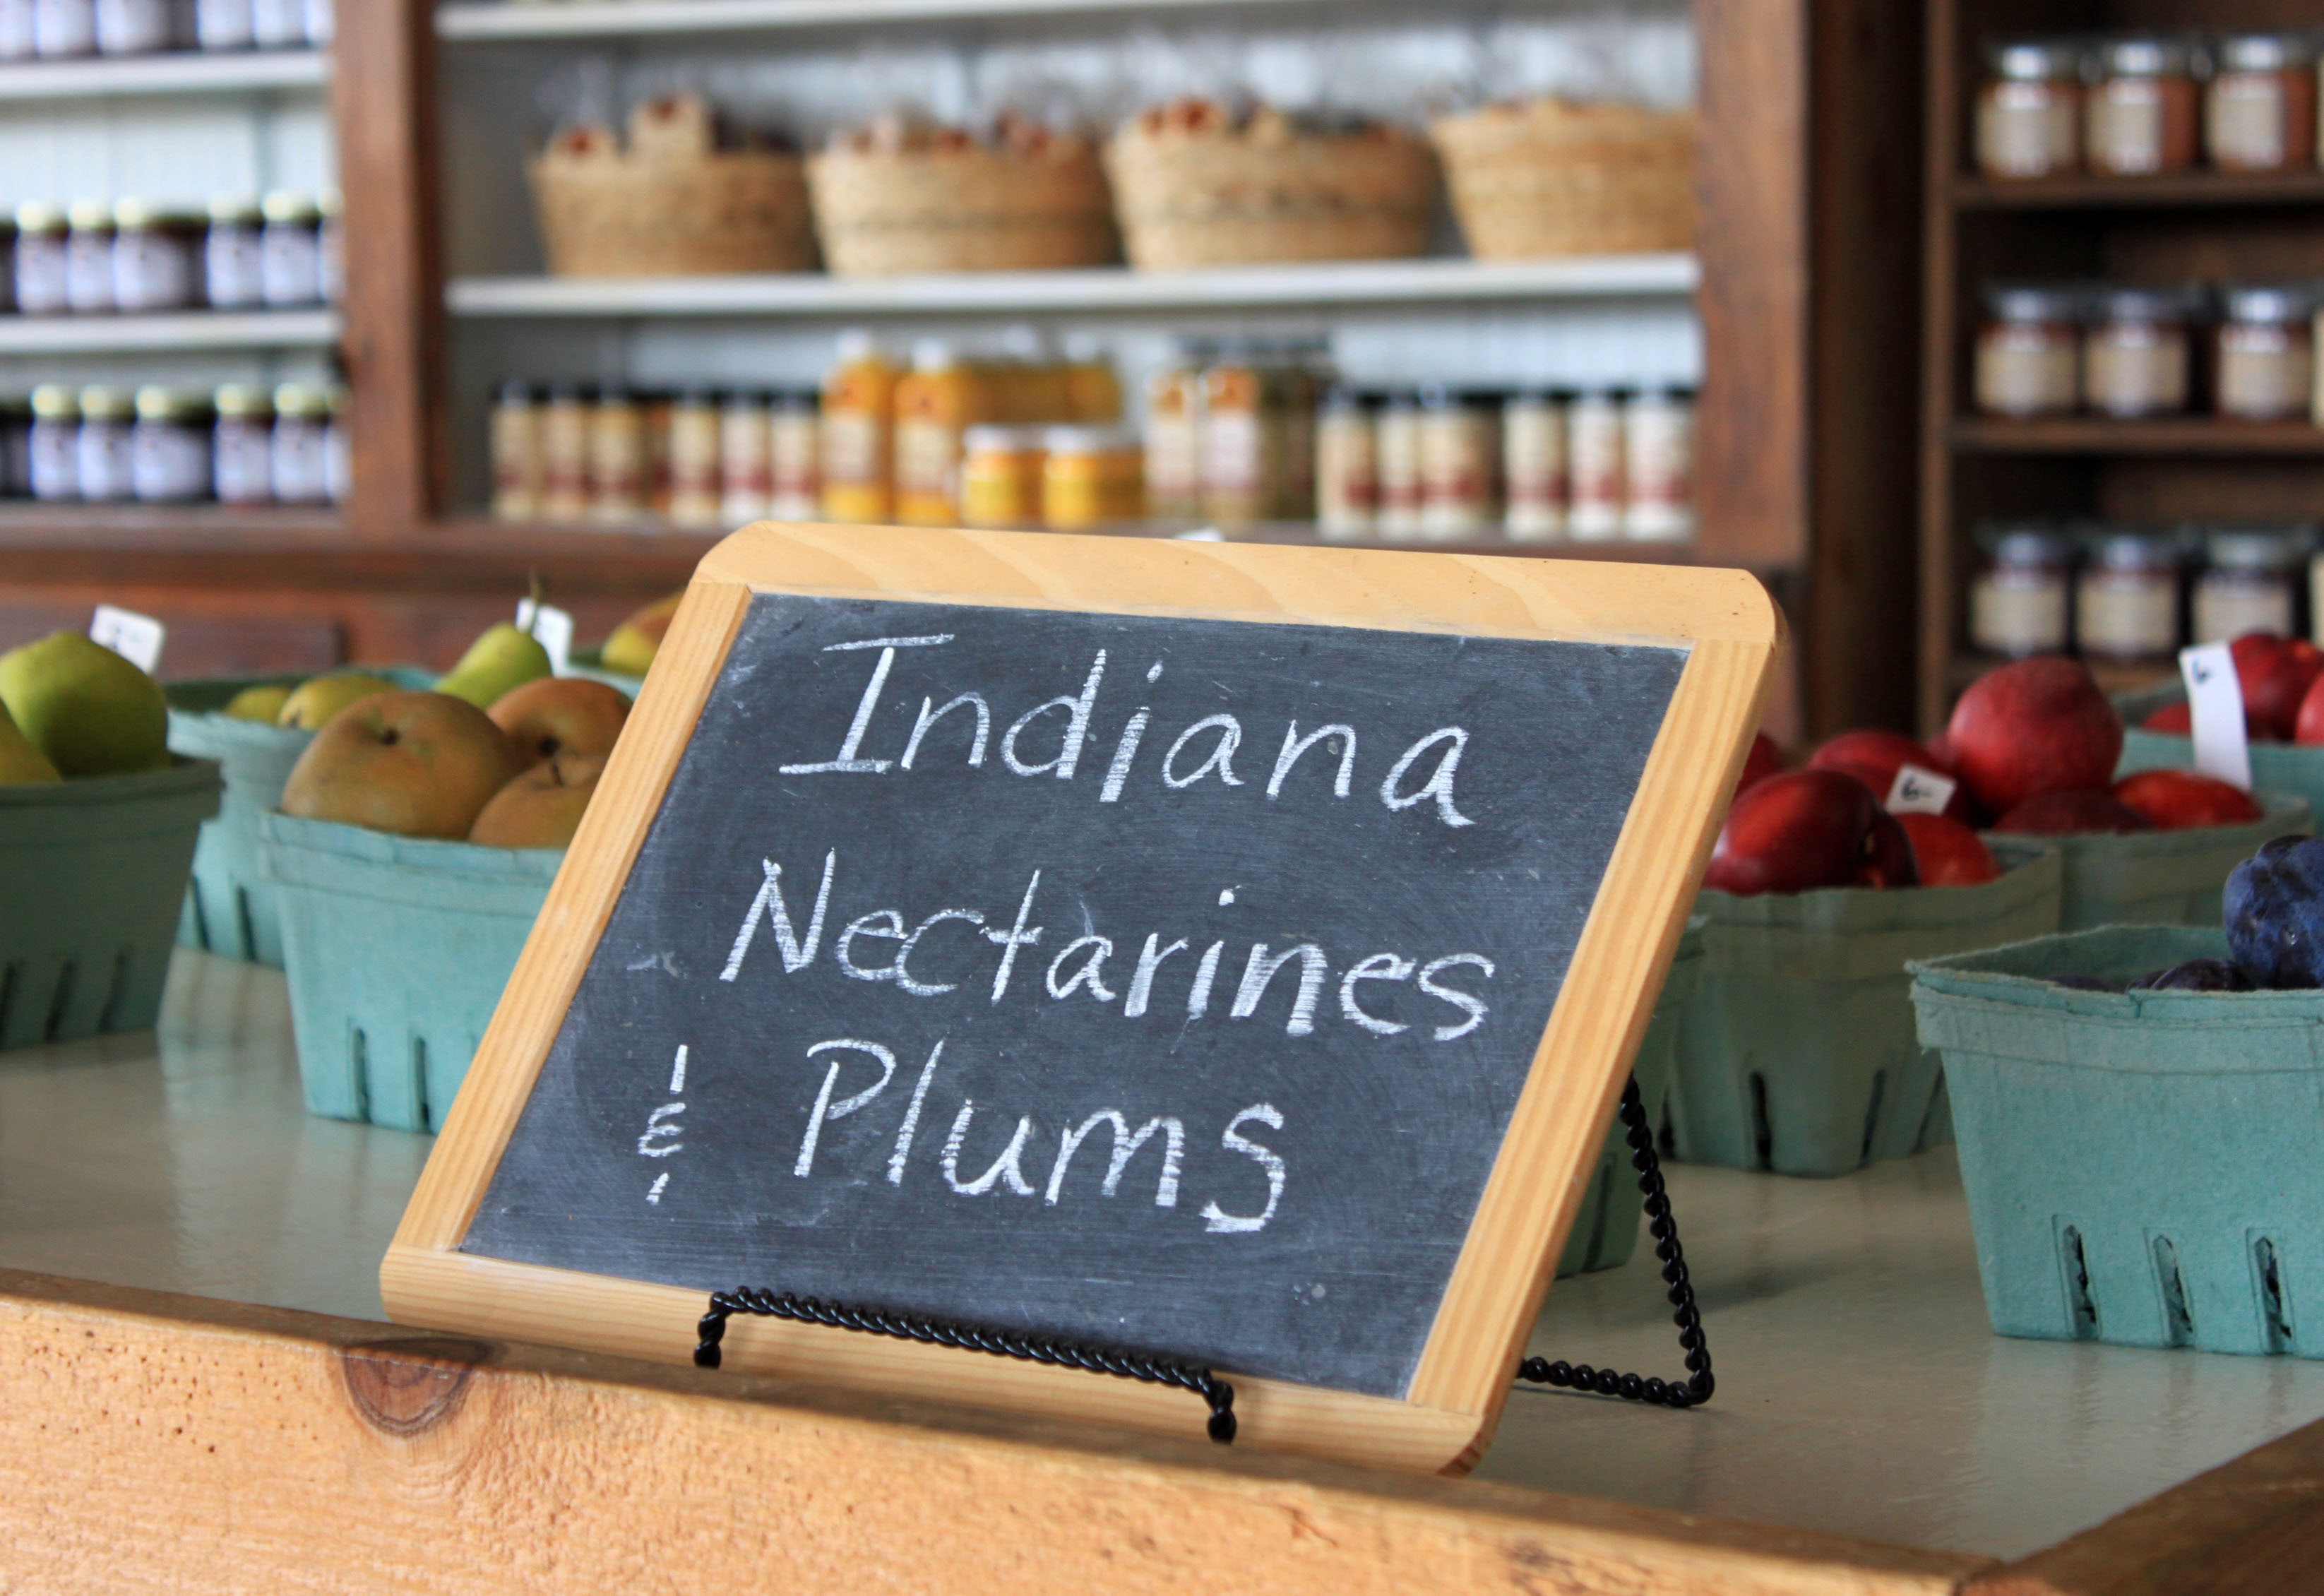 6 Pleasant View Indiana Nectarines